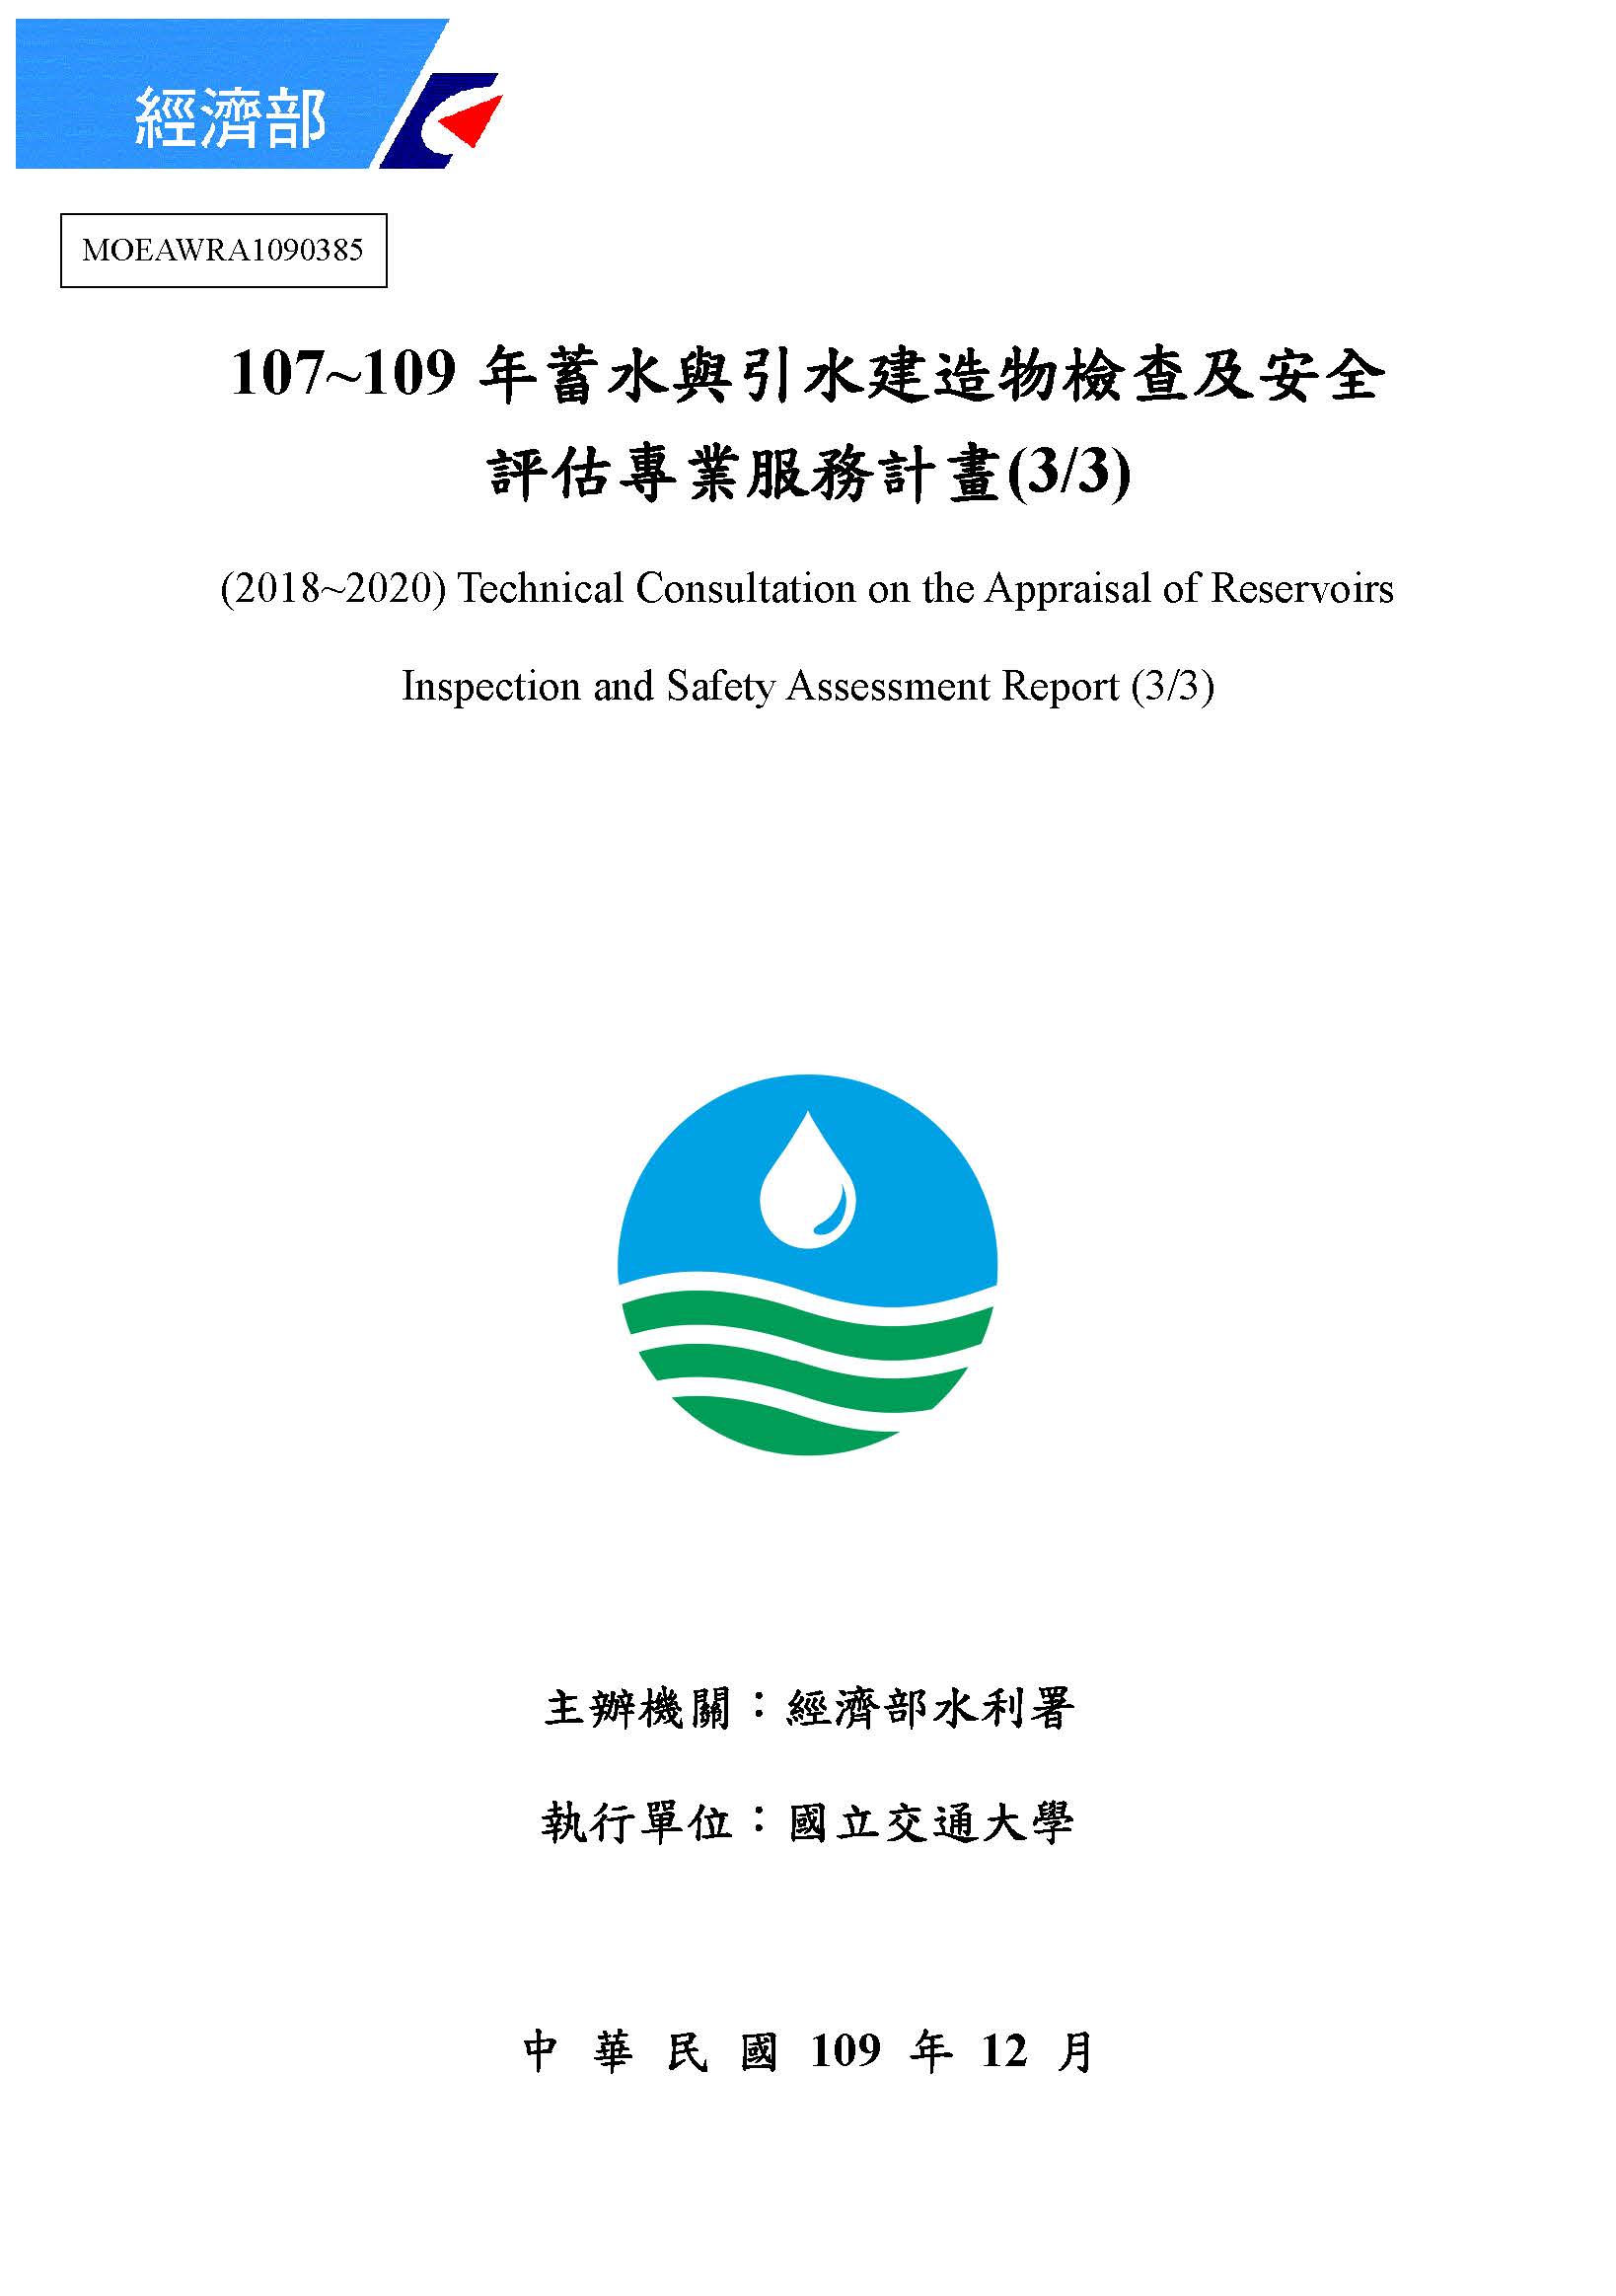 107-109年蓄水與引水建造物檢查及安全評估專業服務計畫(3/3)